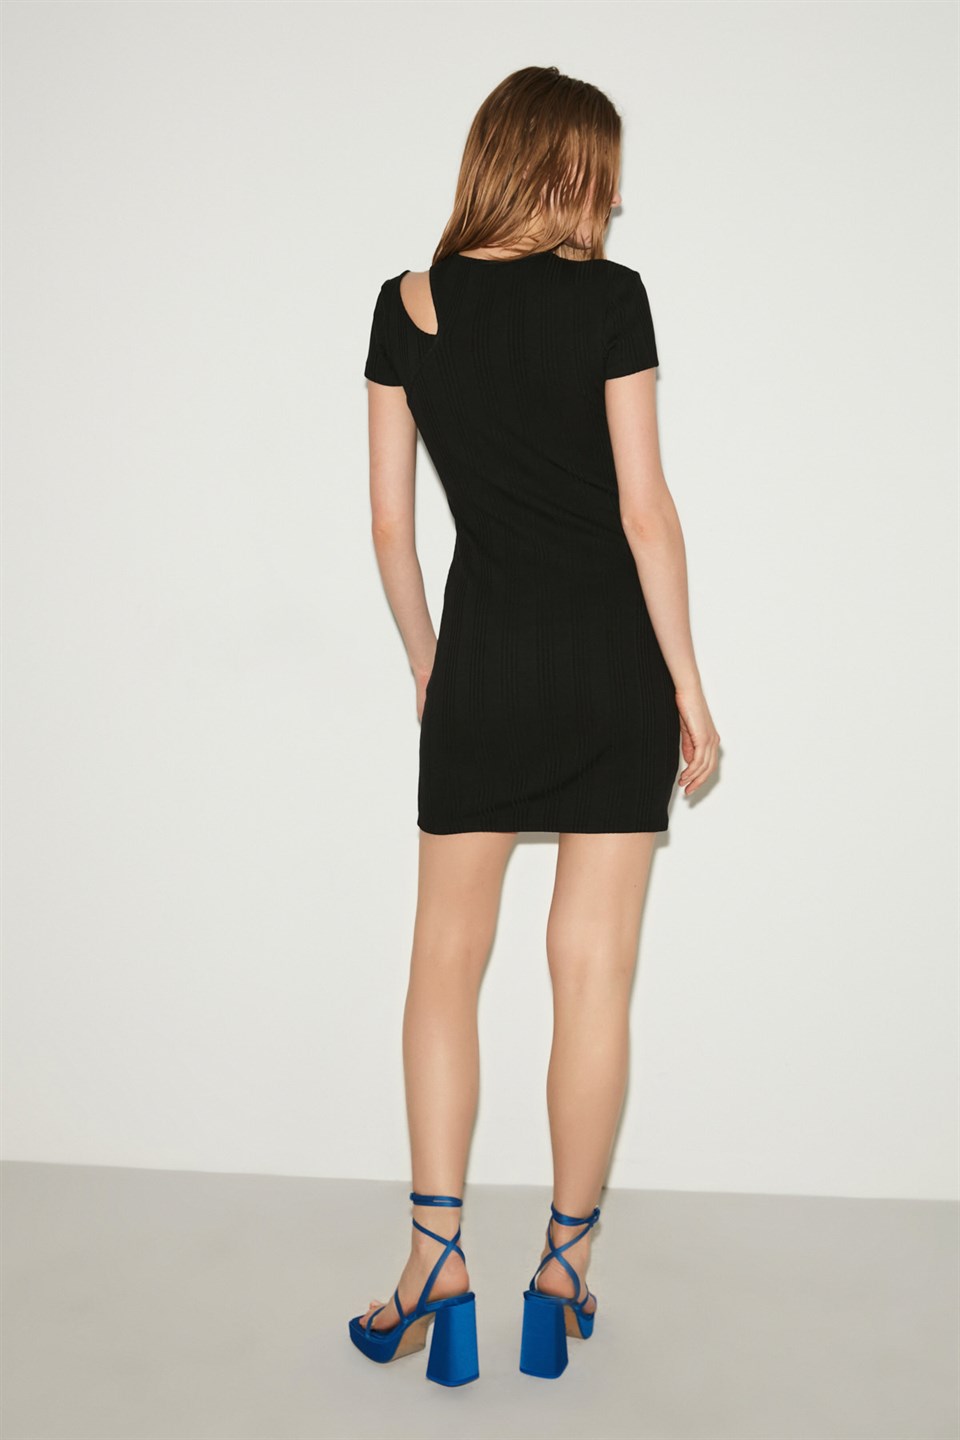 PRIMROSE Siyah Kadın Düz Renk Yuvarlak Yaka Cut Out Detaylı  Mini  Mini Elbise